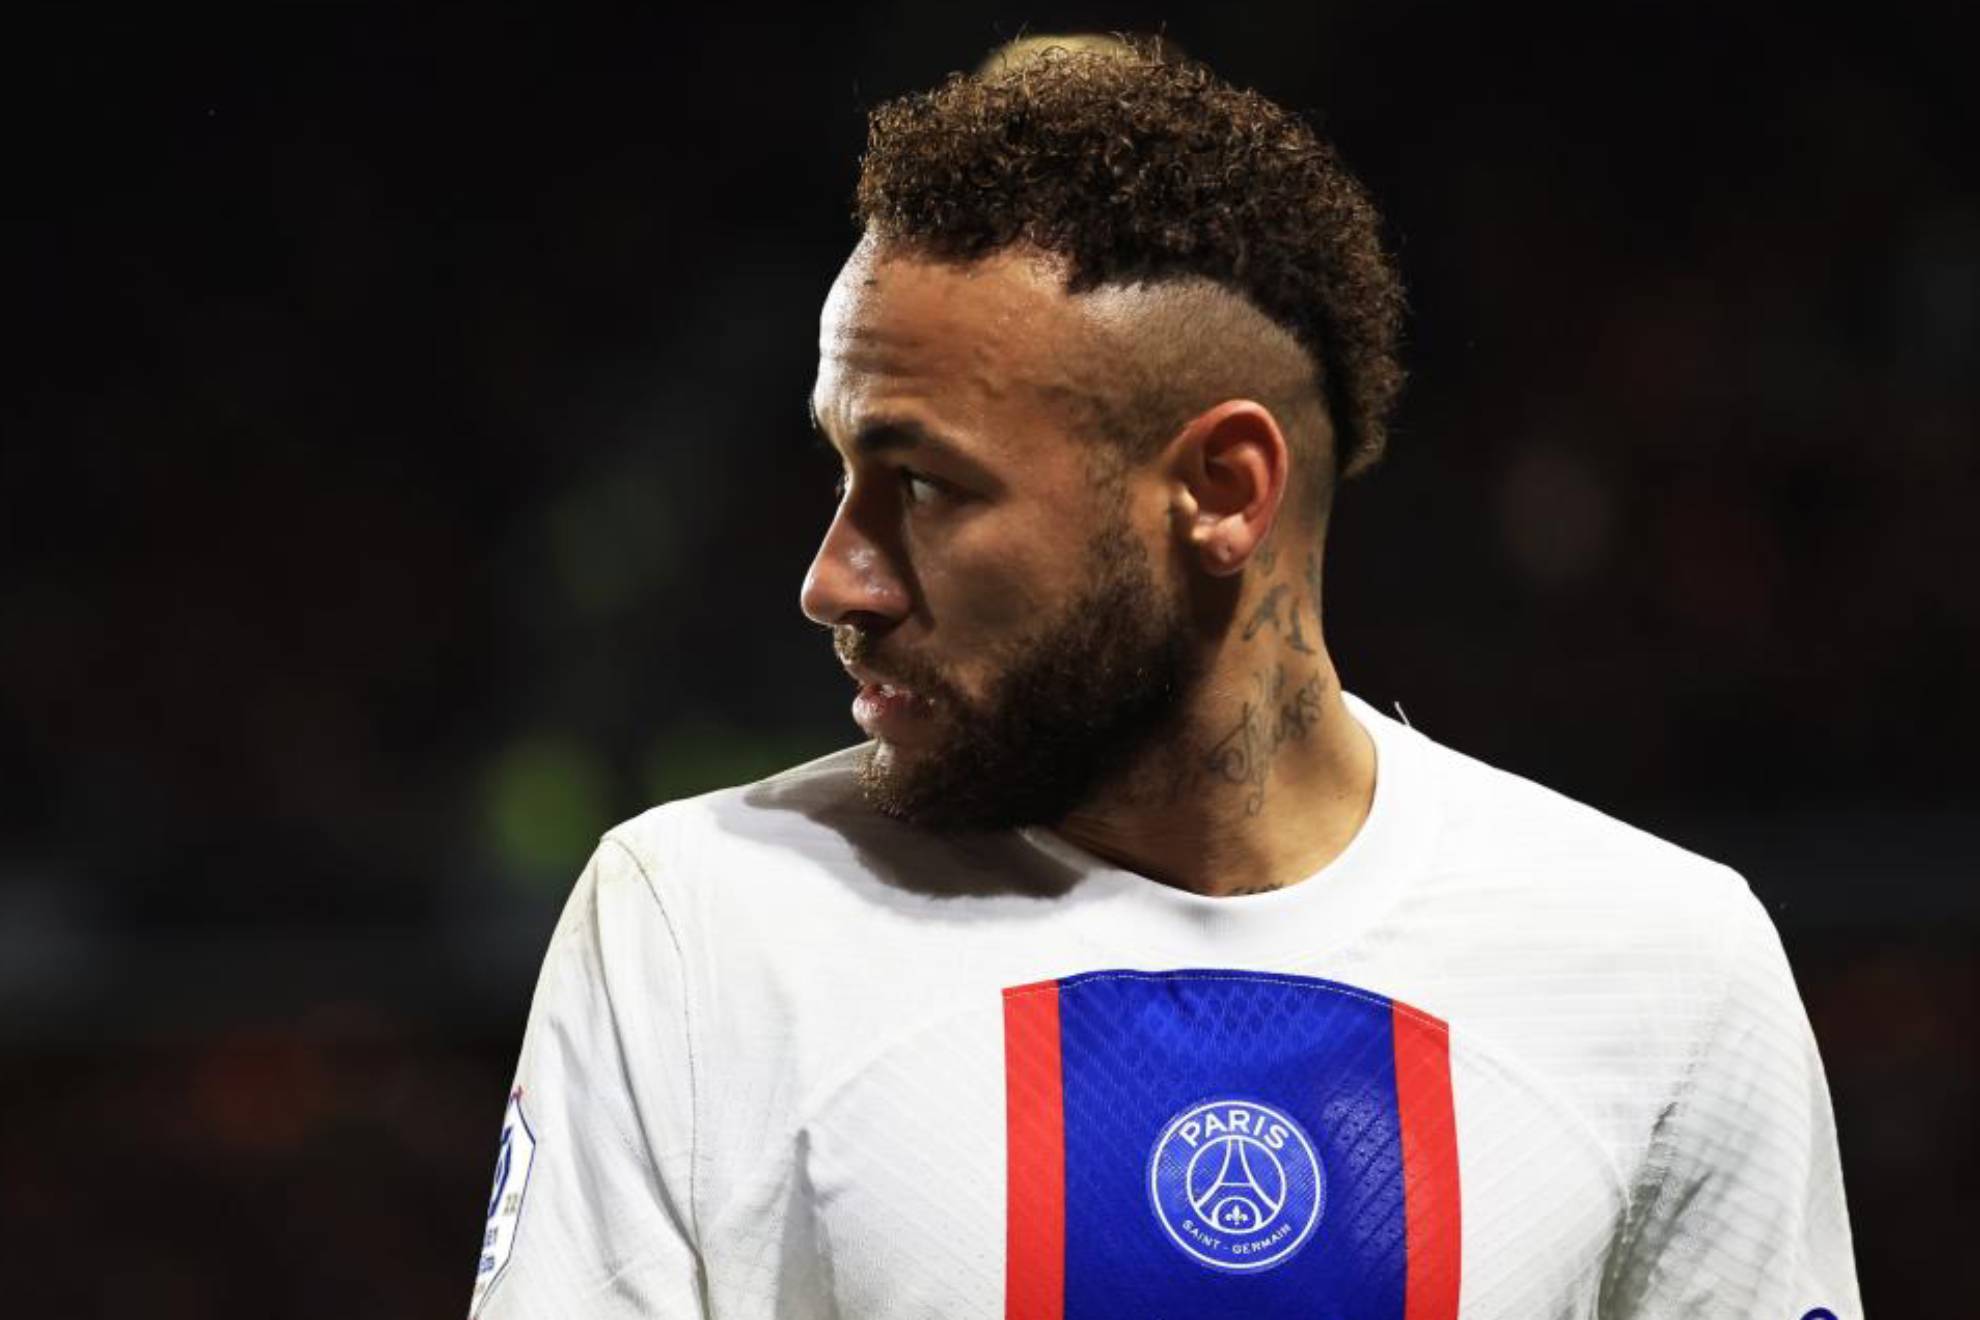 Lluvia de 'palos' a Neymar en Francia: "Es el mayor fracaso de la historia del ftbol"